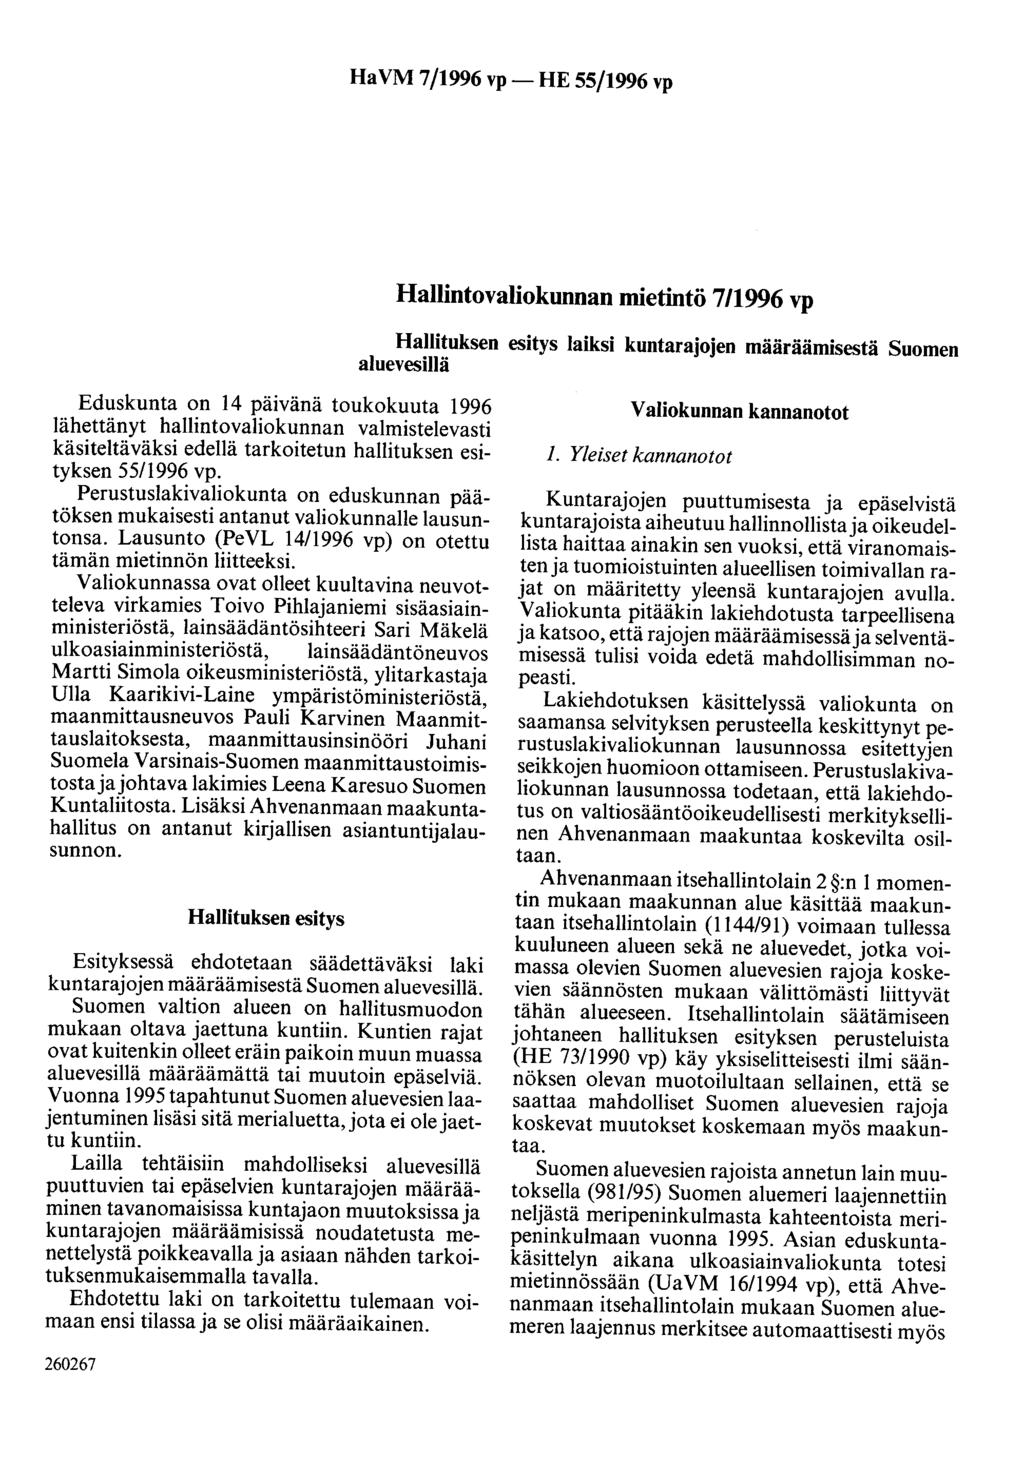 Ha VM 7/1996 vp- HE 55/1996 vp Hallintovaliokunnan mietintö 711996 vp Hallituksen esitys laiksi kuntarajojen määräämisestä Suomen ajuevesijjä Eduskunta on 14 päivänä toukokuuta 1996 lähettänyt